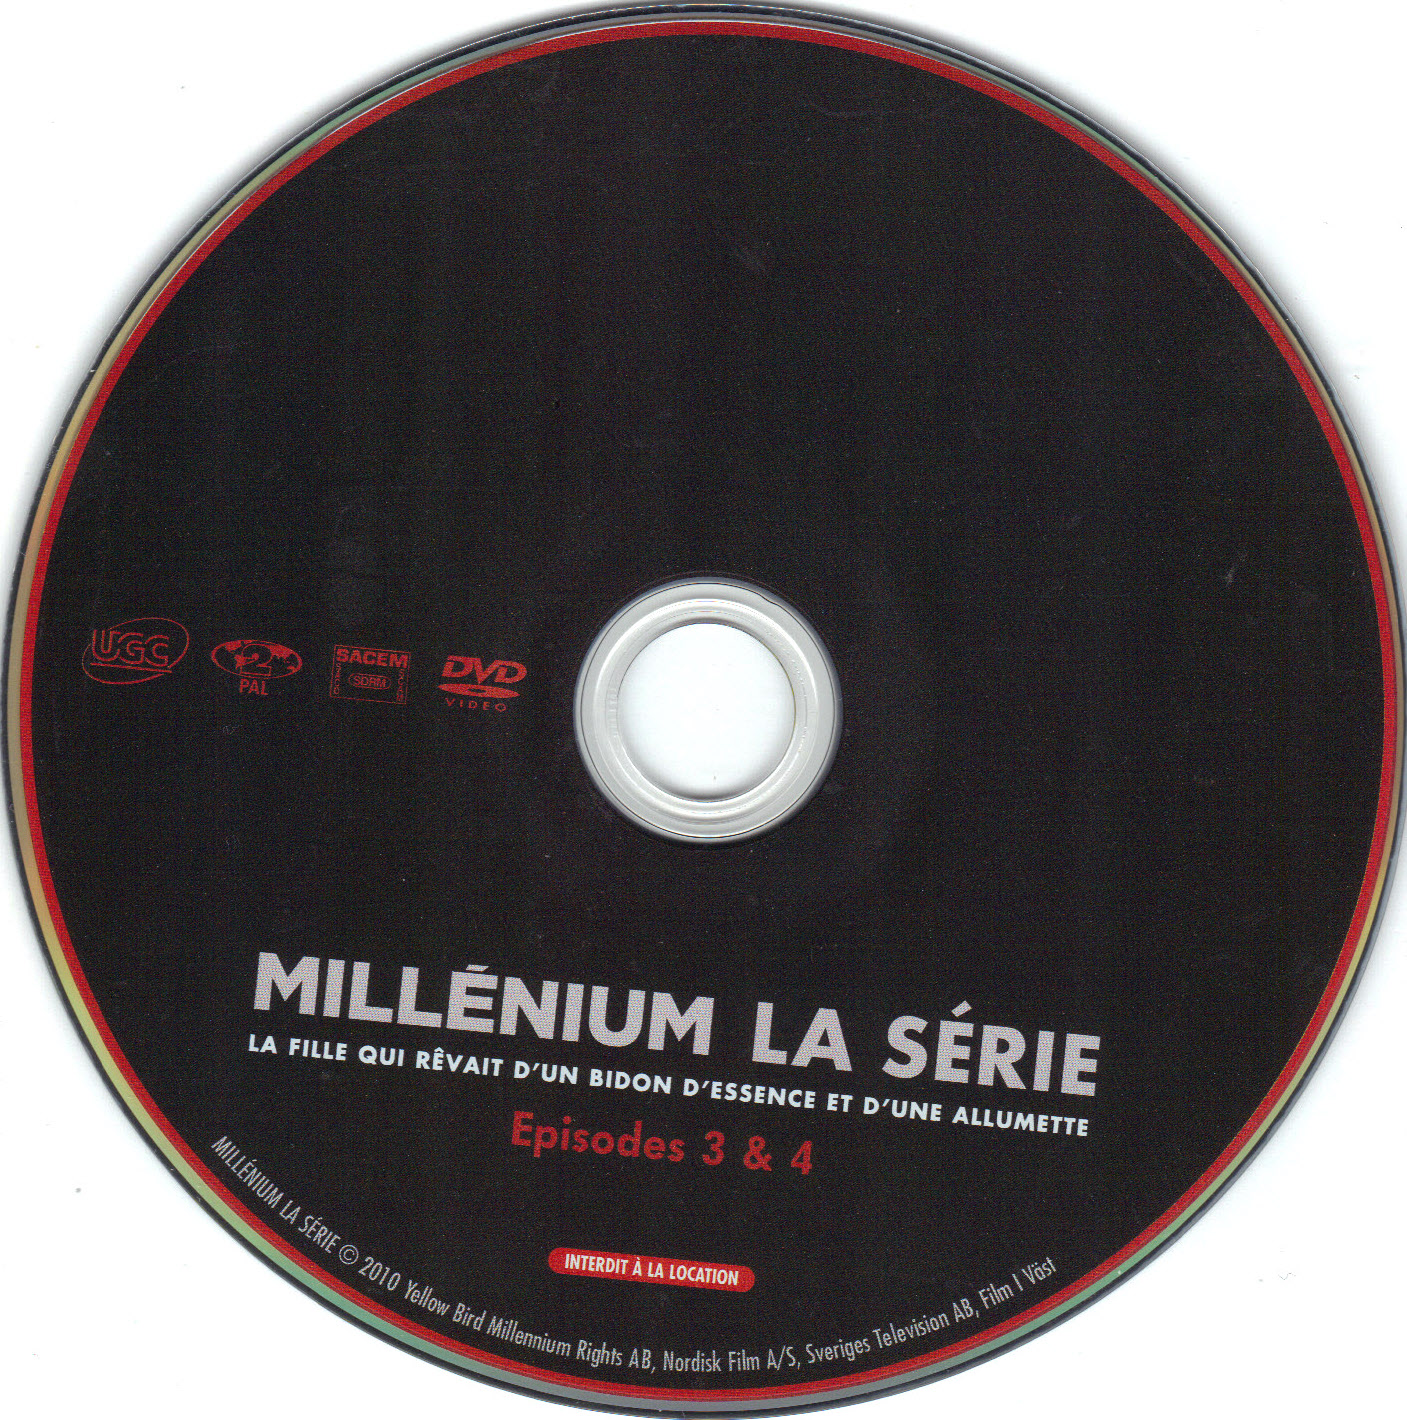 Millnium La Srie - Episodes 3-4